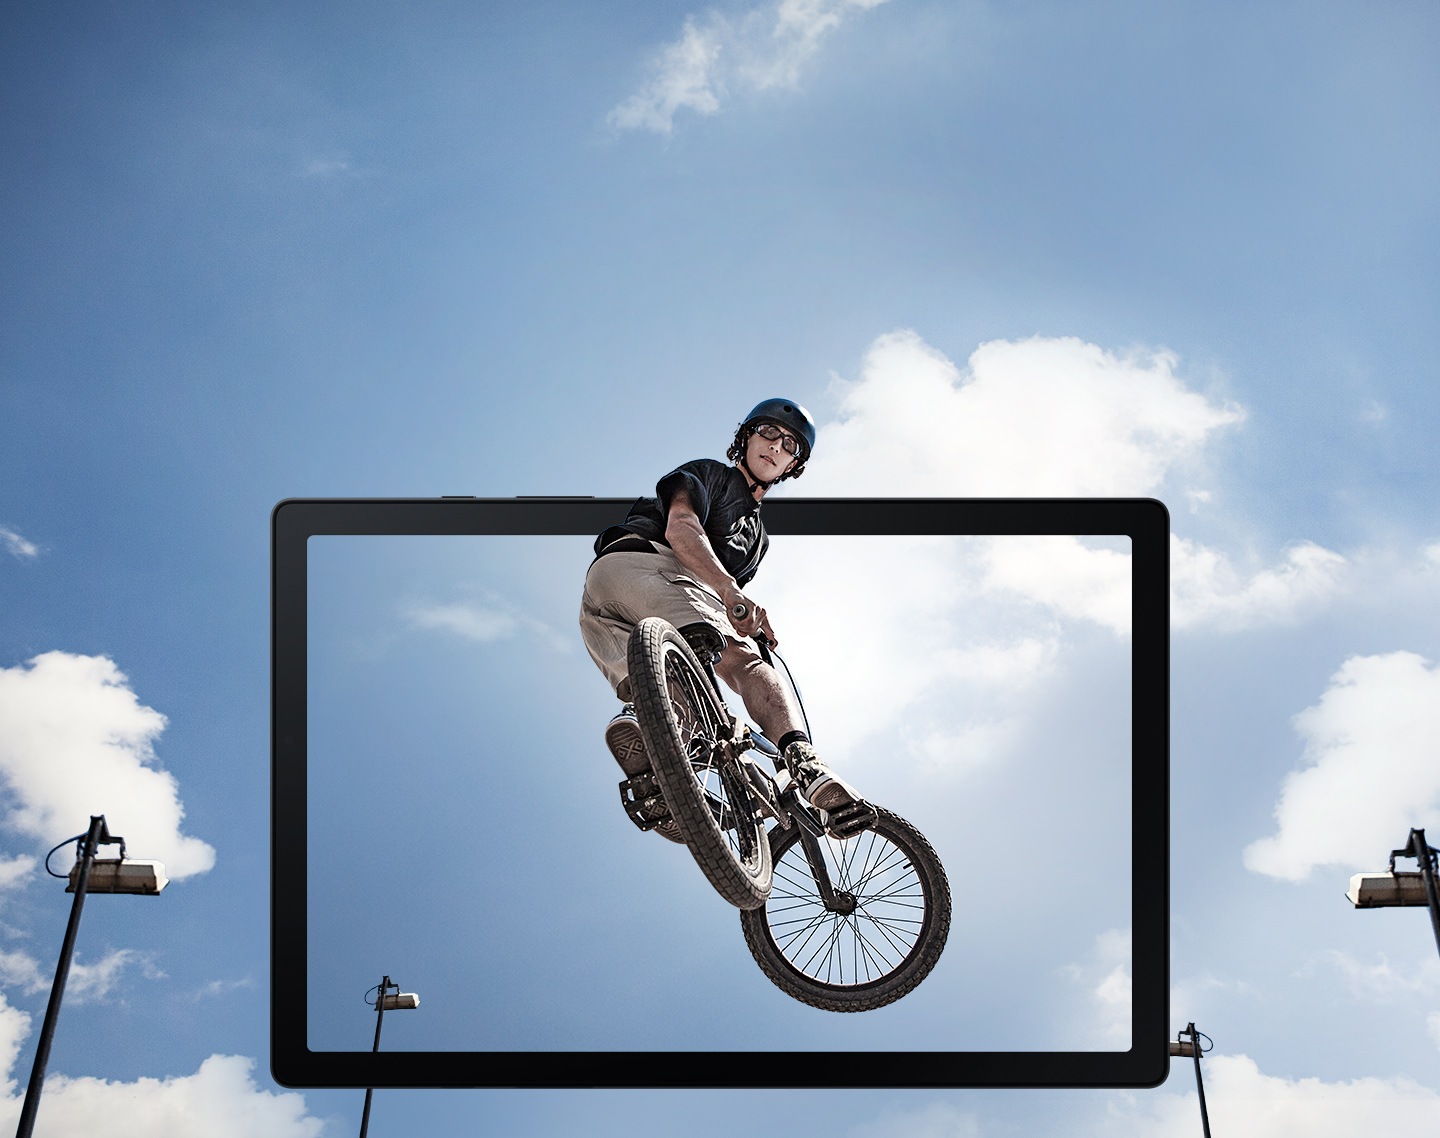 Prikazan je čovjek na BMX biciklu u skoku u zraku kako iskače iz zaslona tableta.